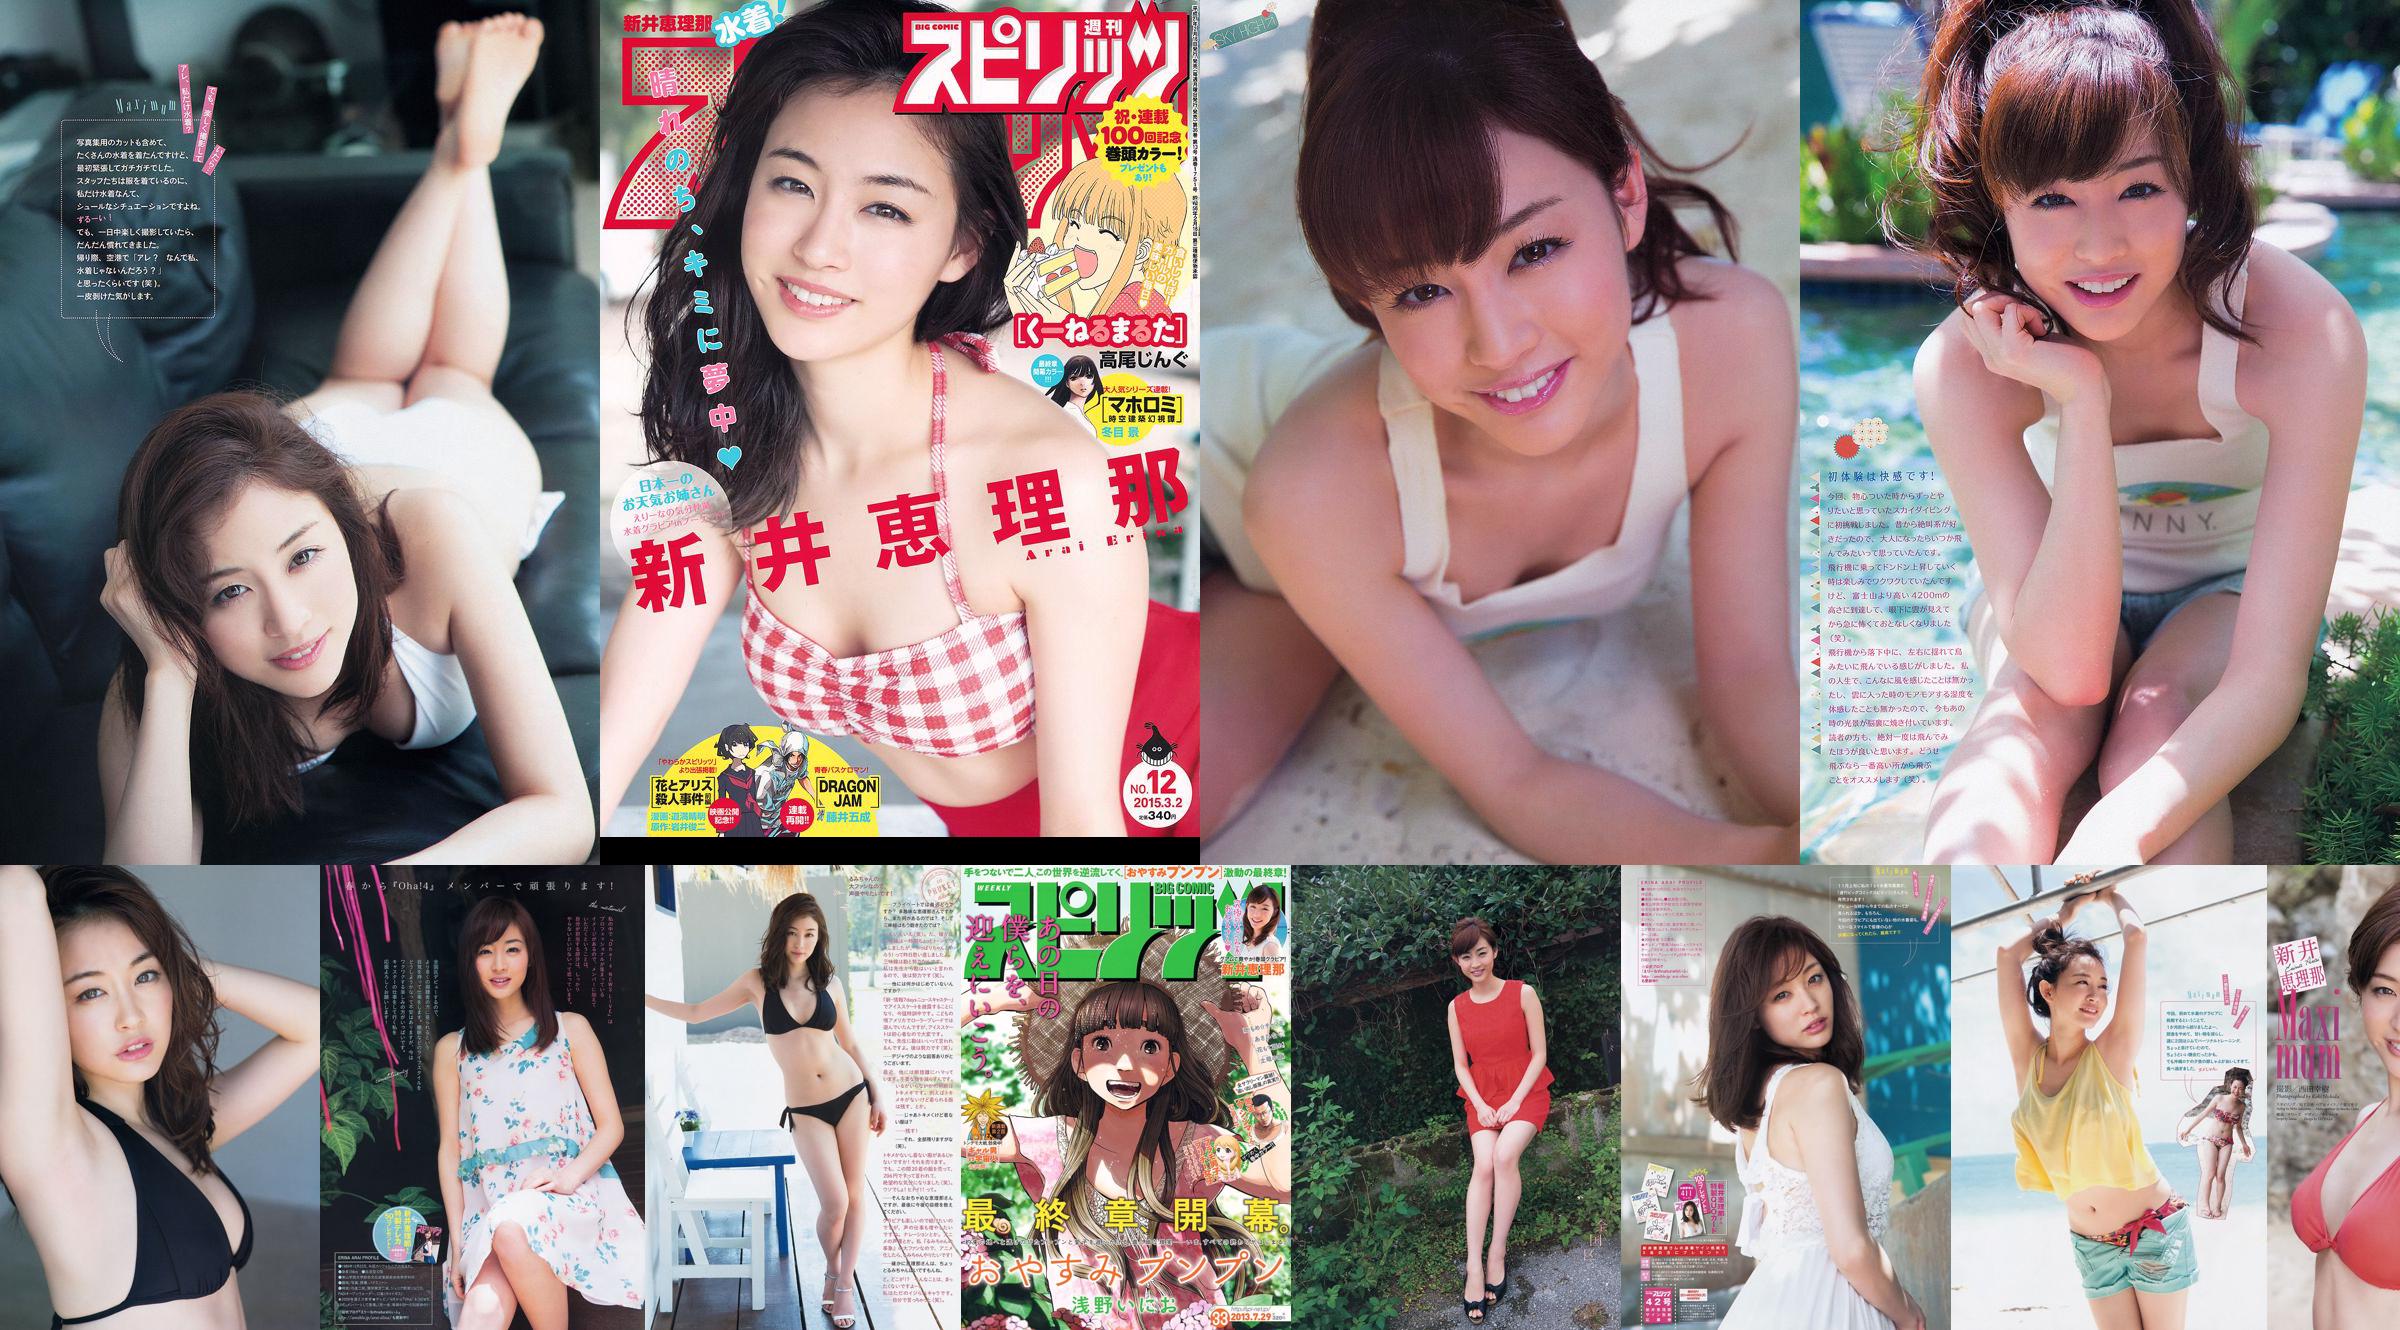 [Wöchentliche große Comic-Geister] Erina Arai No.12 Photo Magazine im Jahr 2015 No.96b55f Seite 1